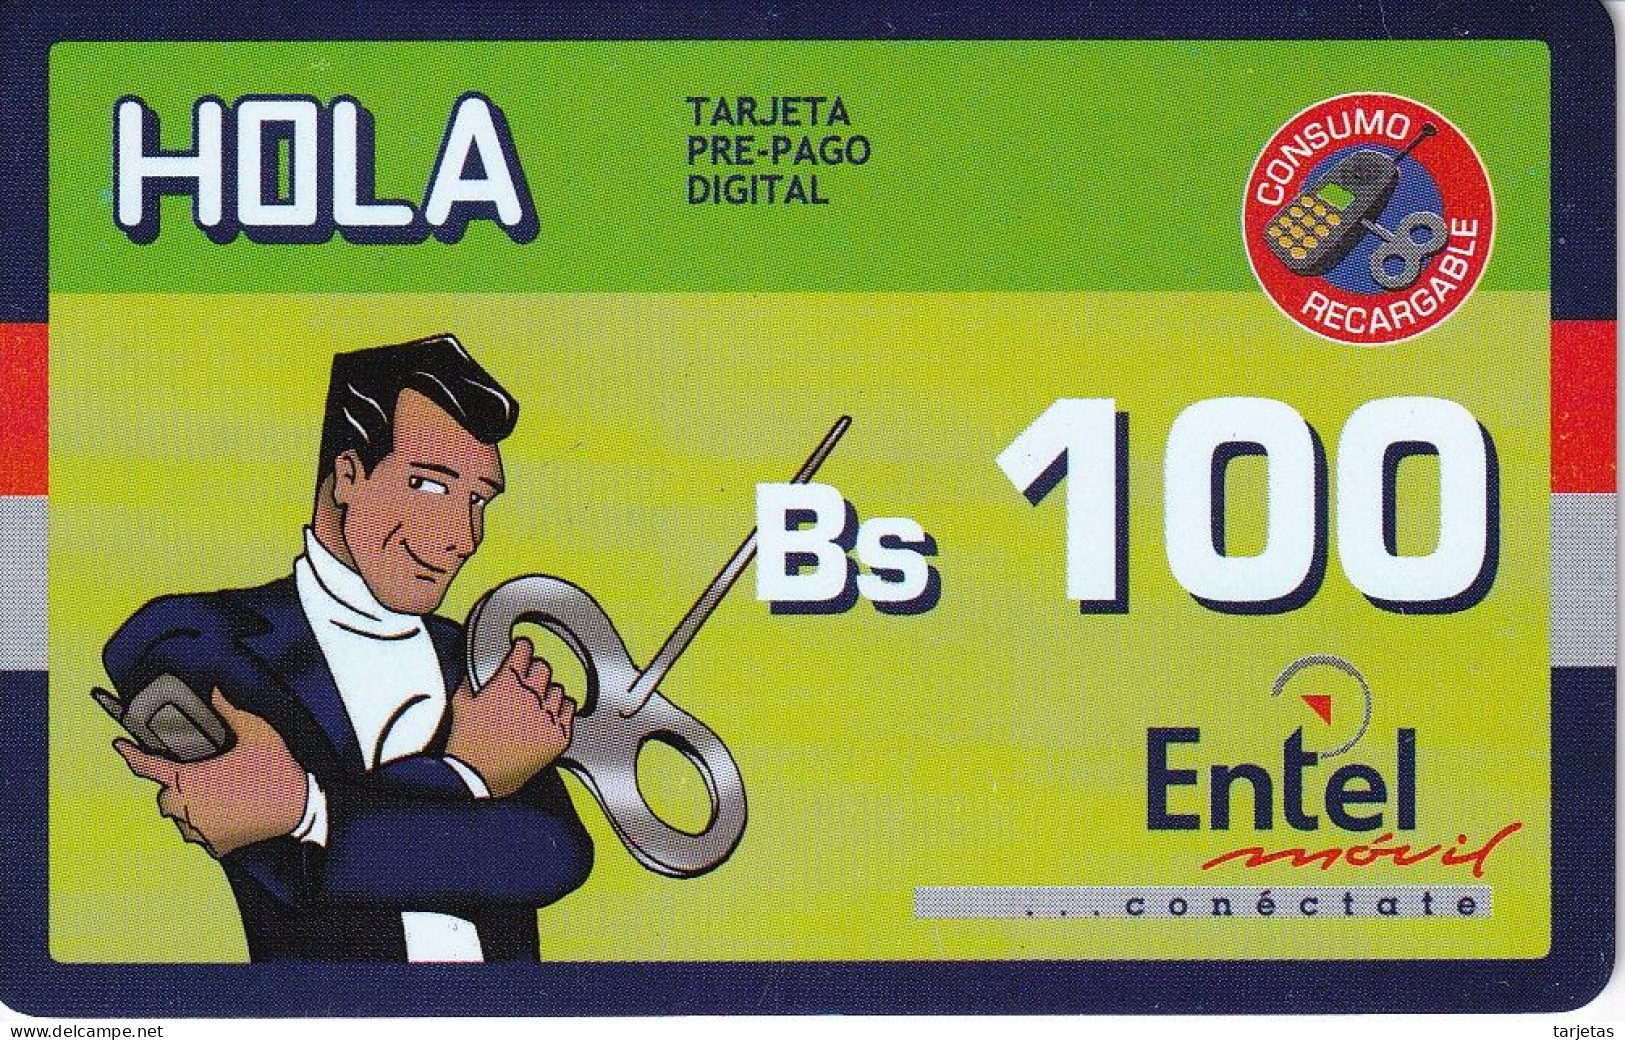 TARJETA DE BOLIVIA DE Bs 100 DE ENTEL - CLUB HOLA - 2 PUNTOS CON CODIGO DE BARRAS - Bolivia